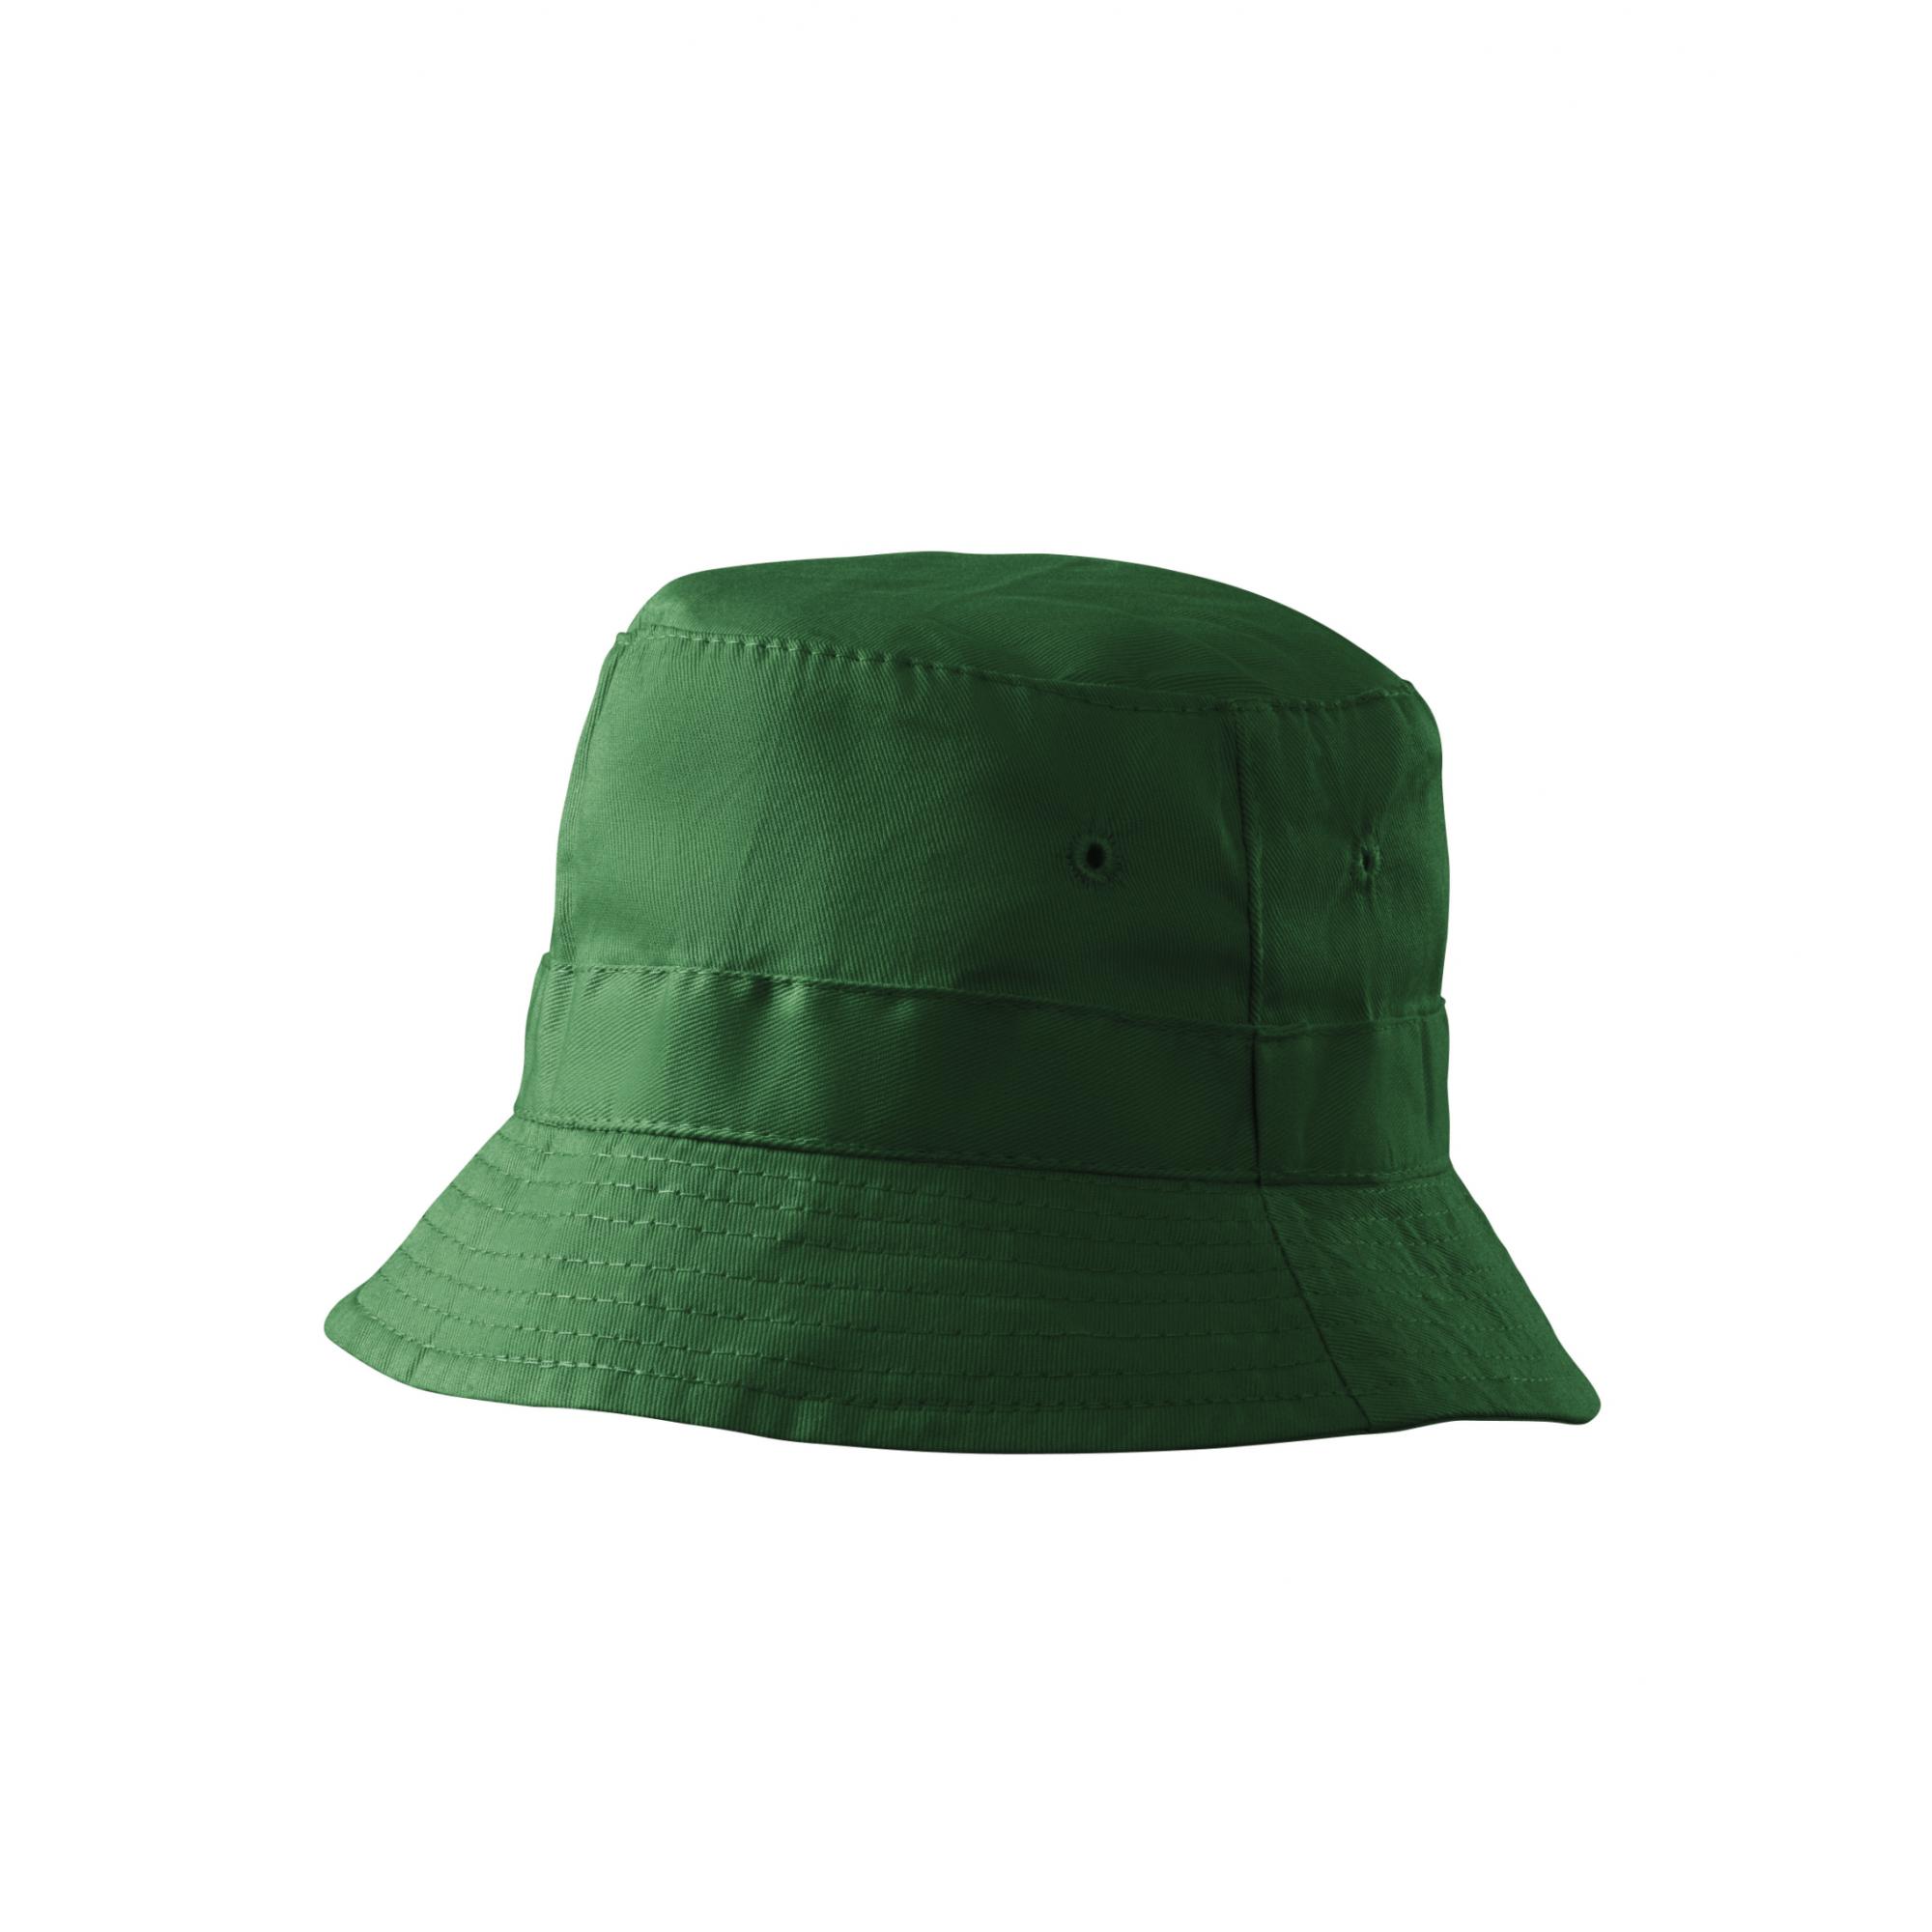 Pălărie unisex Classic 304 Verde sticla Marime universala